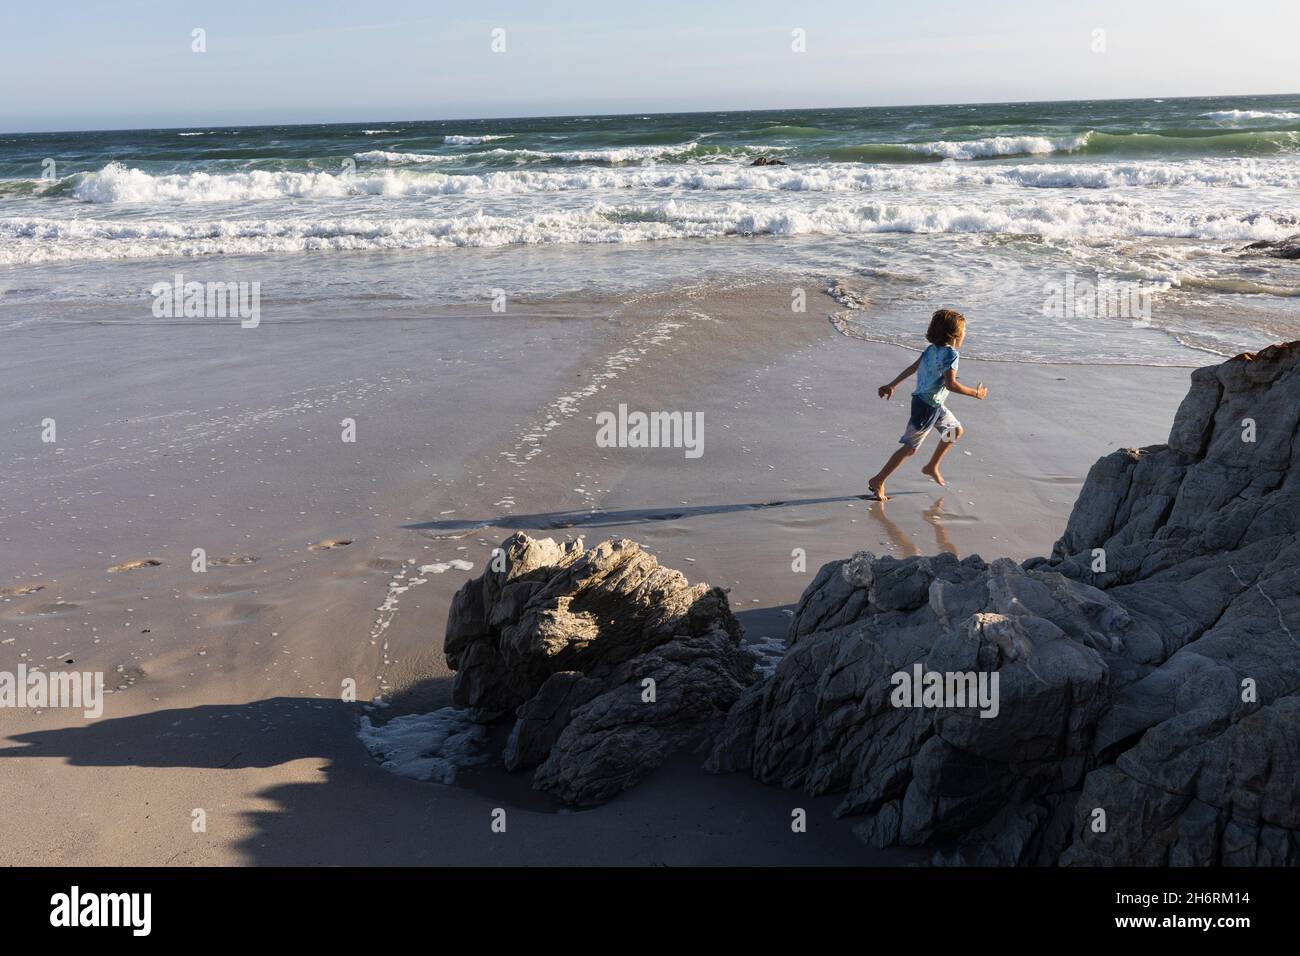 Un ragazzo che corre sulla sabbia a bordo dell'acqua su una spiaggia di sabbia. Foto Stock